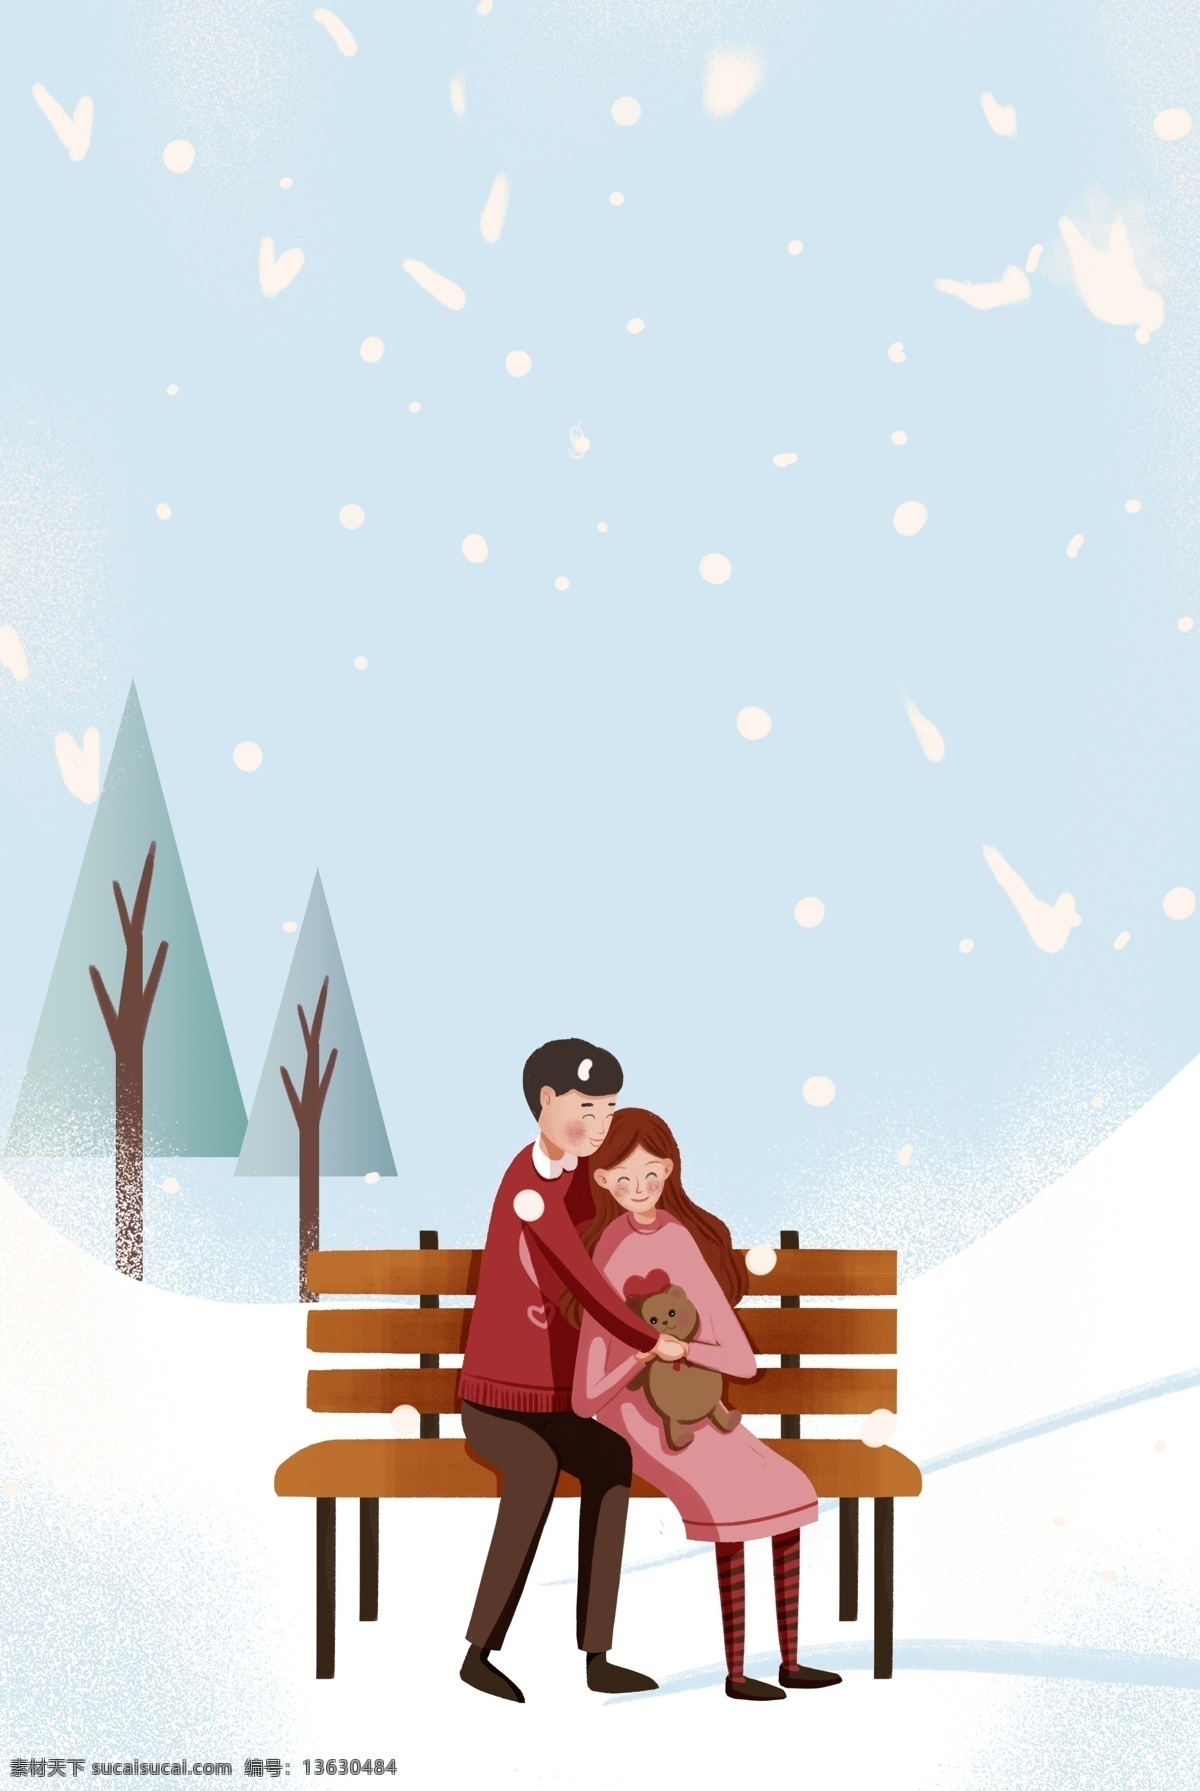 冬日 公园 约会 情侣 插画 海报 浪漫 情人节 人物 插画风 促销海报